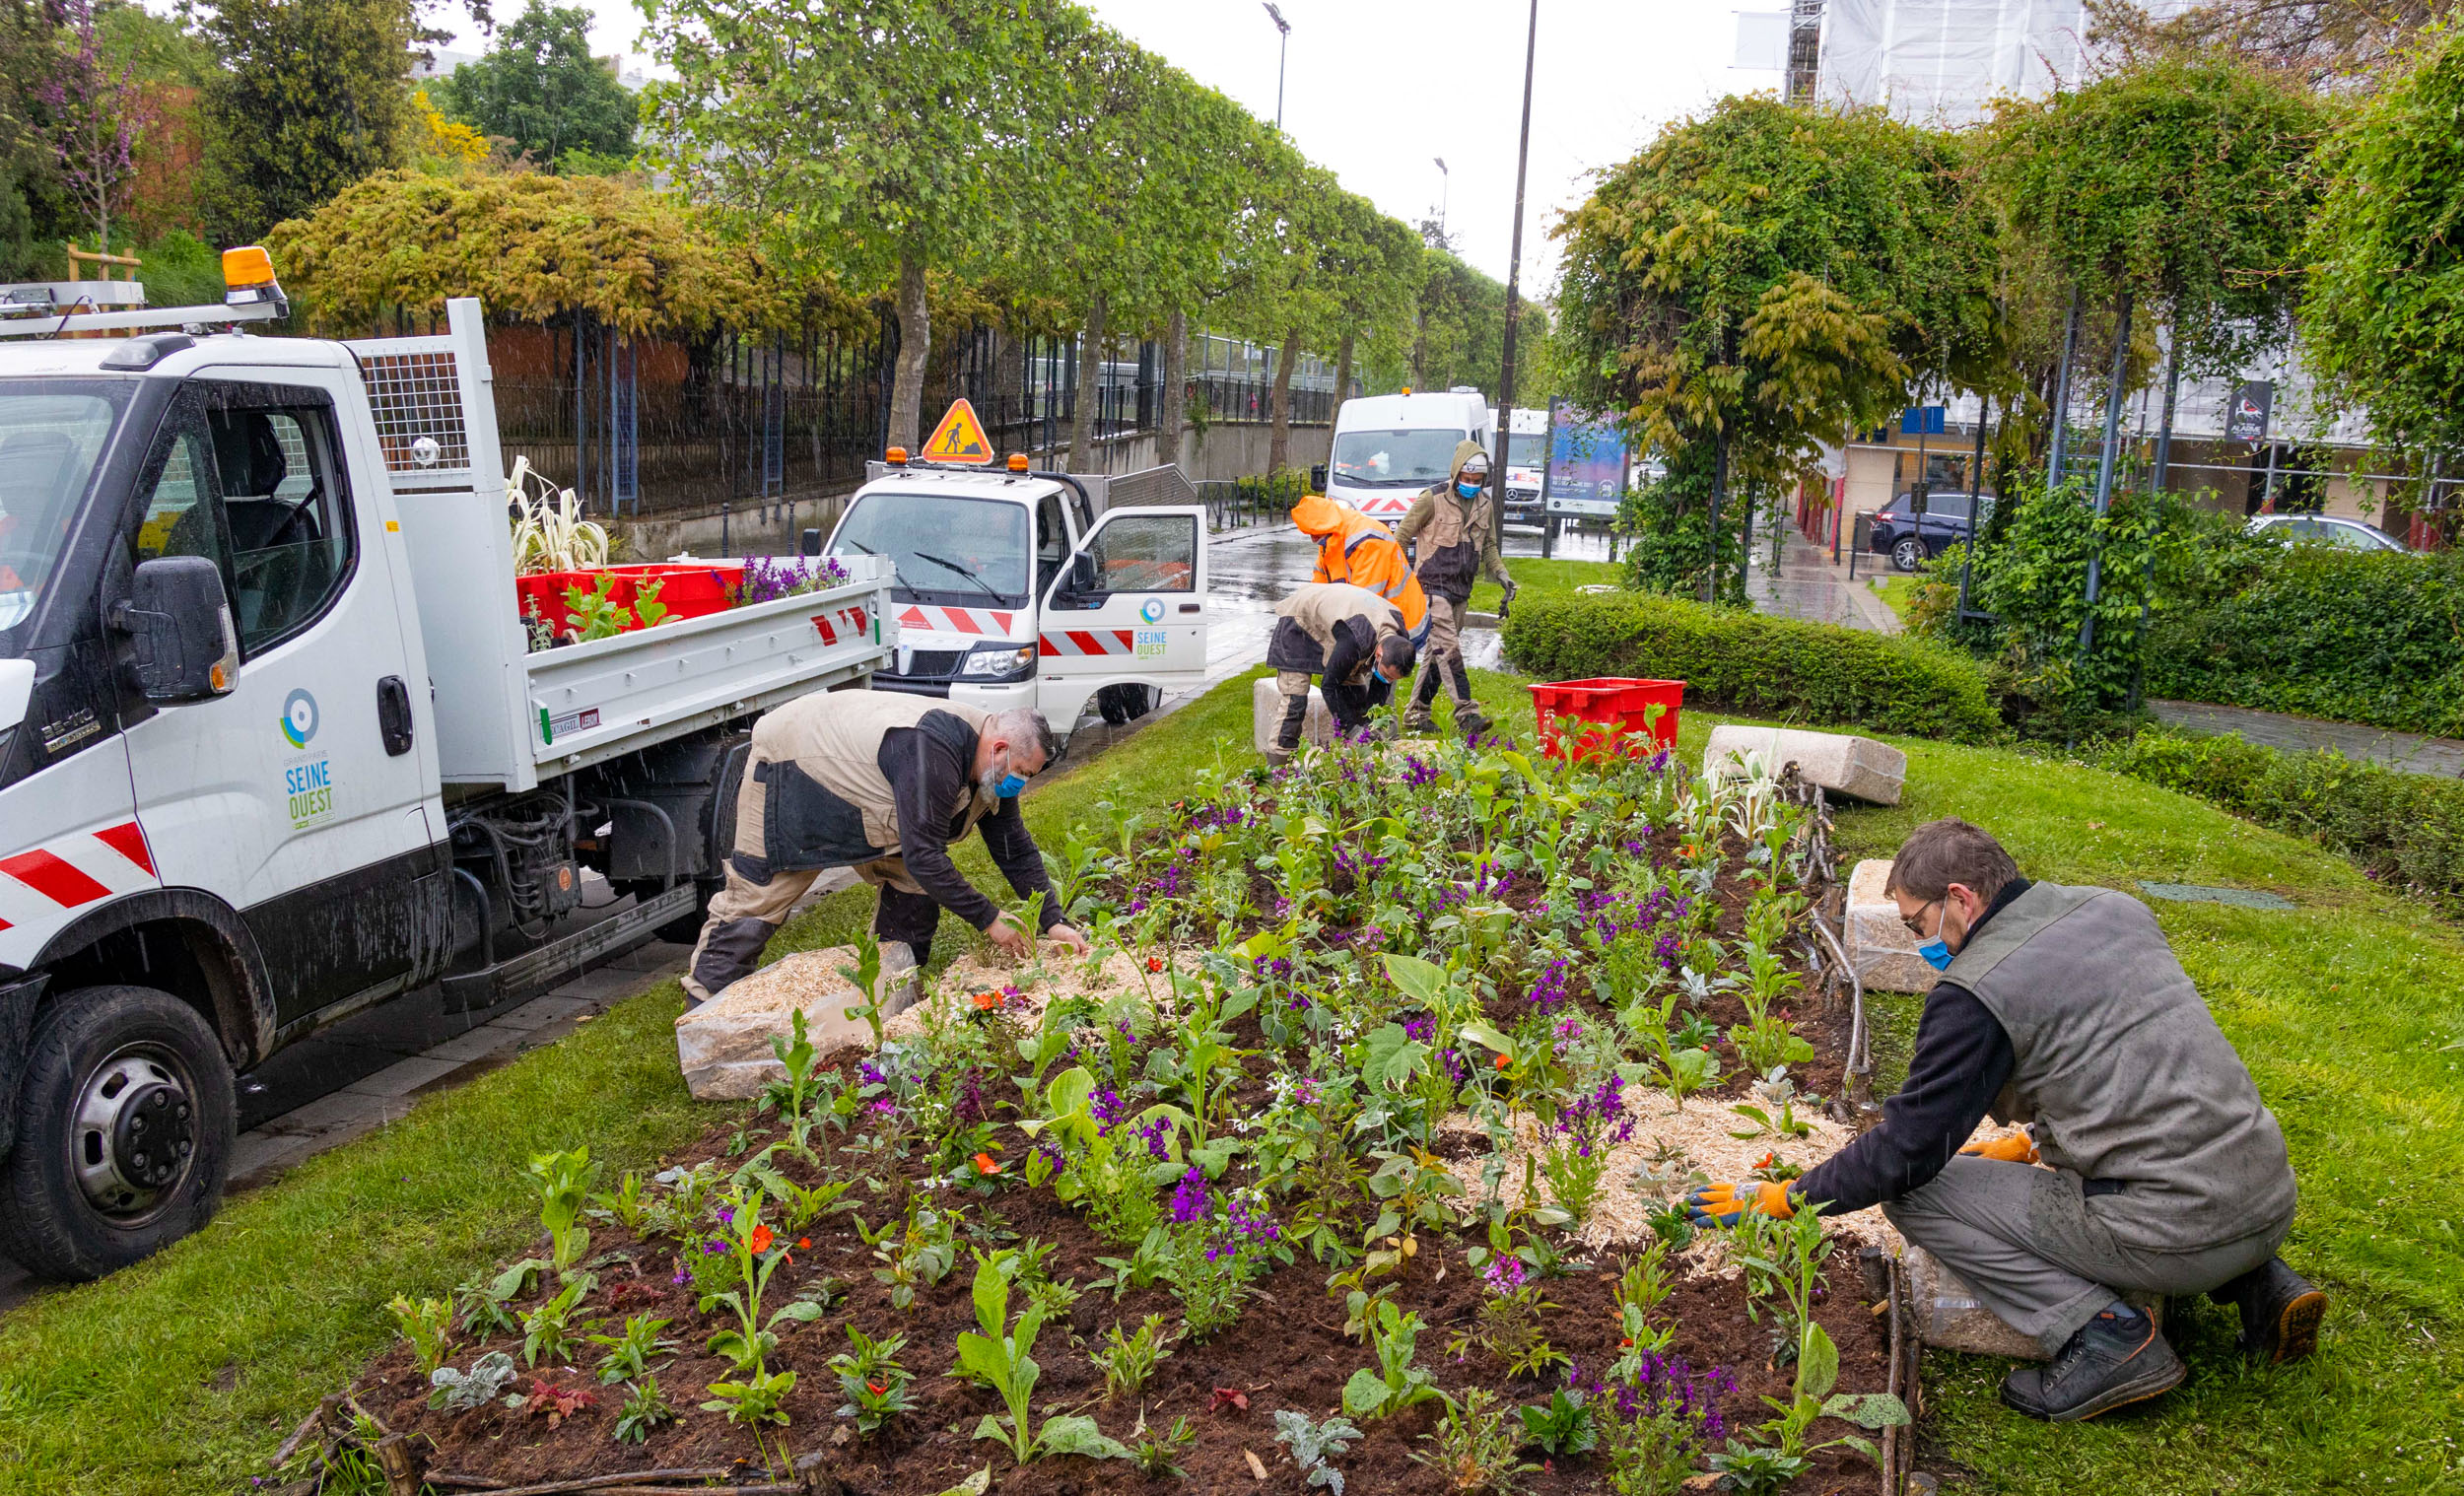 Jardiniers / fleurissement estival 2021 à Boulogne-Billancourt